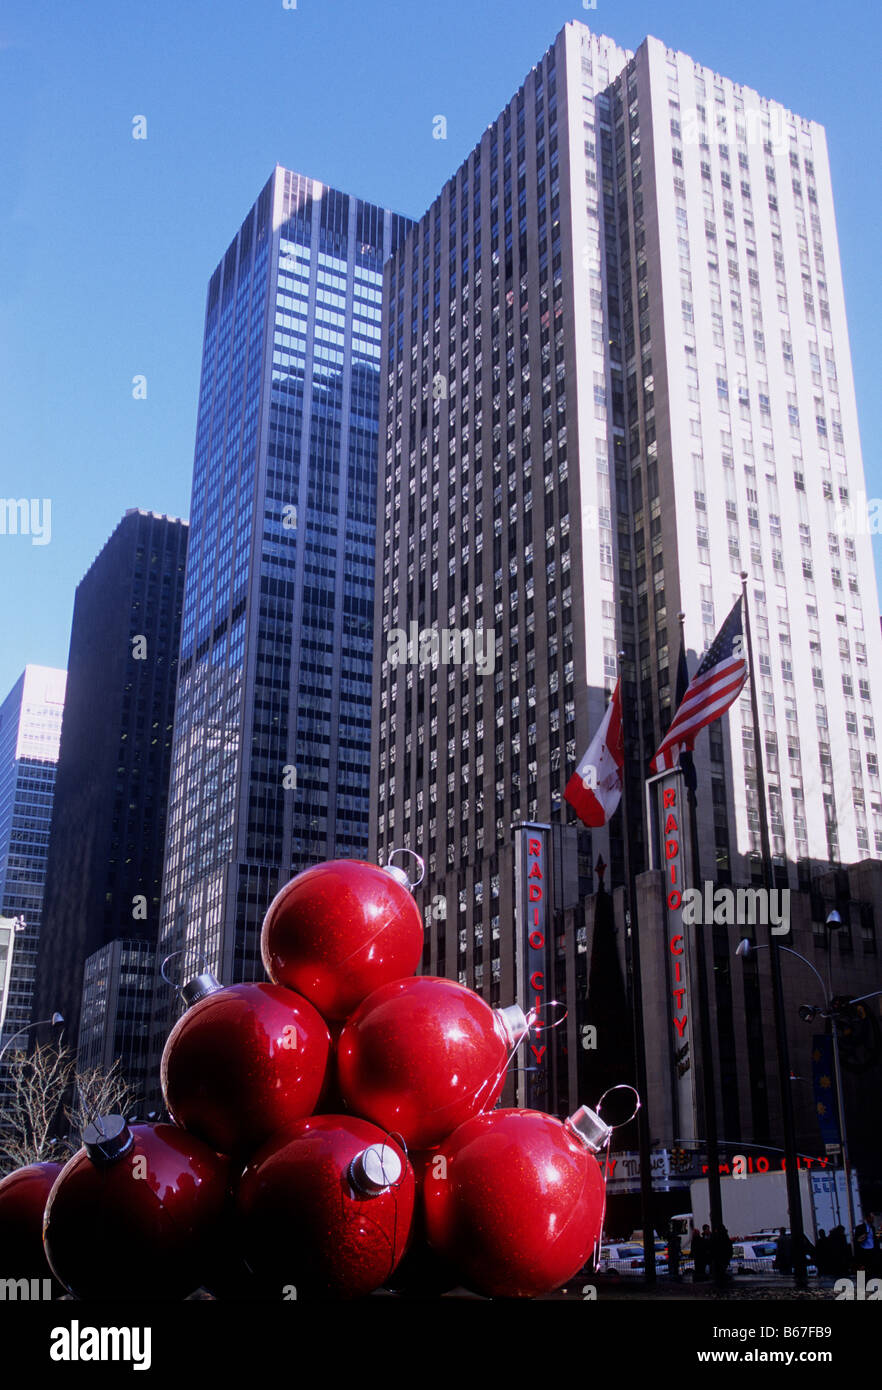 Wolkenkratzer auf der Sixth Avenue, (Avenue of the Americas) New York City. Radio City Music Hall. Riesige rote Weihnachtsdekorationen auf der Straße. USA Stockfoto